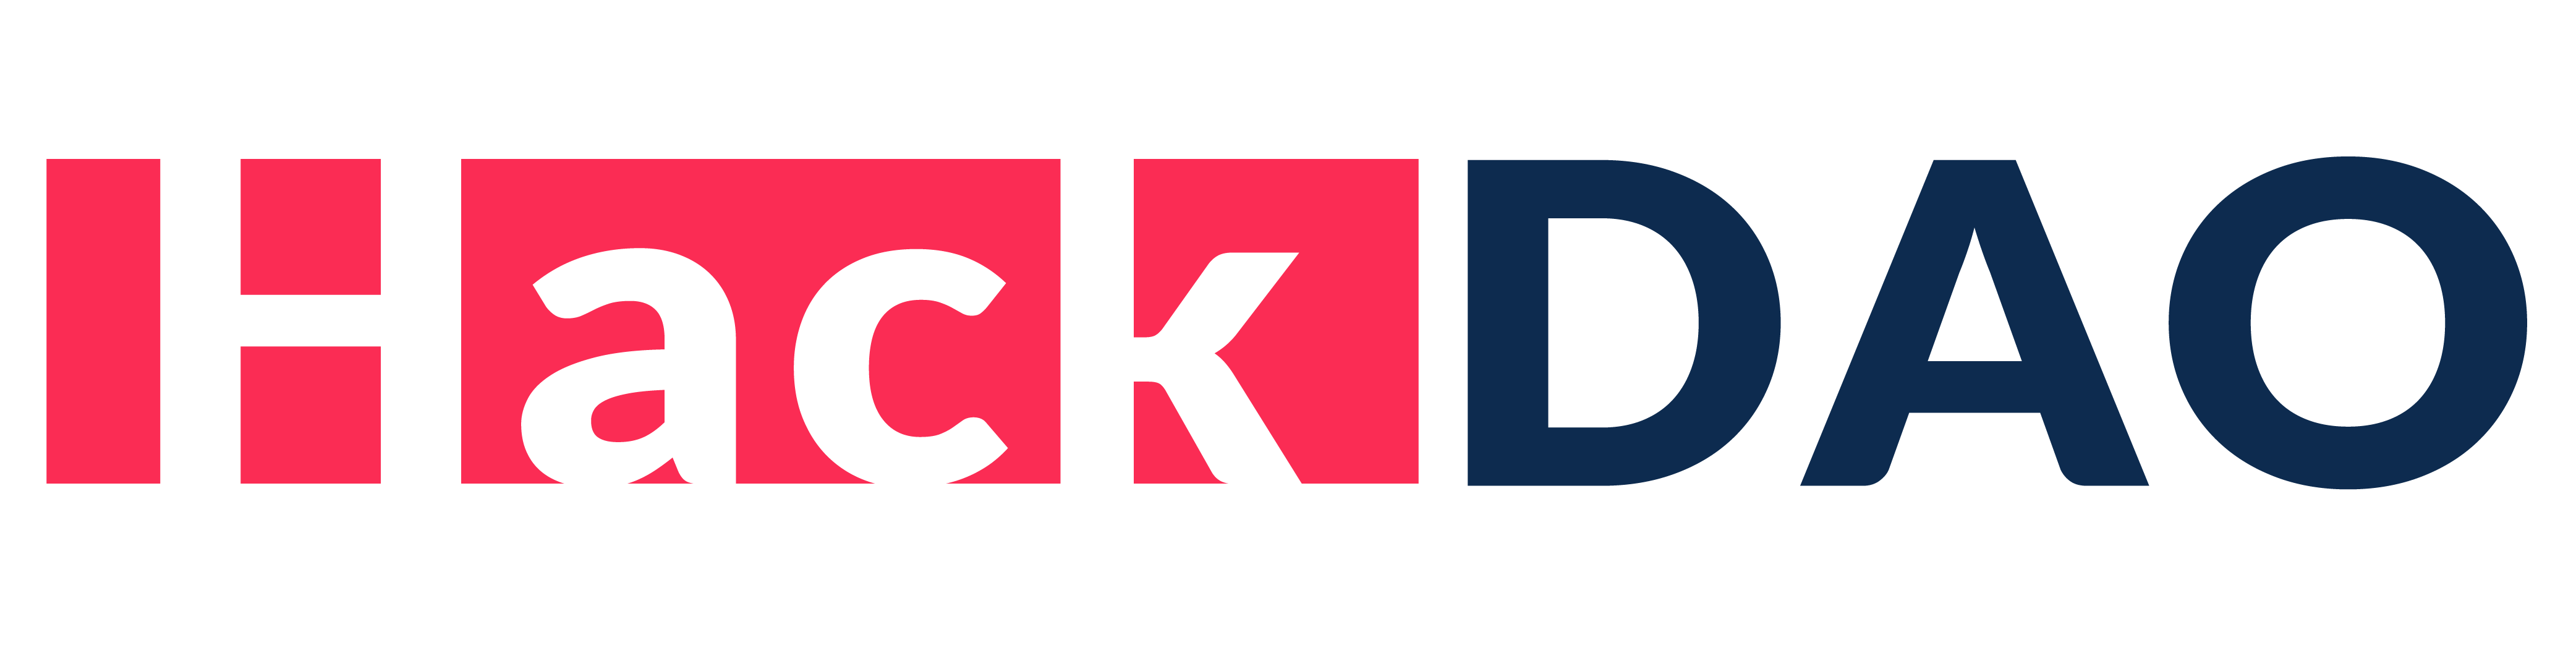 Hackdao Logo